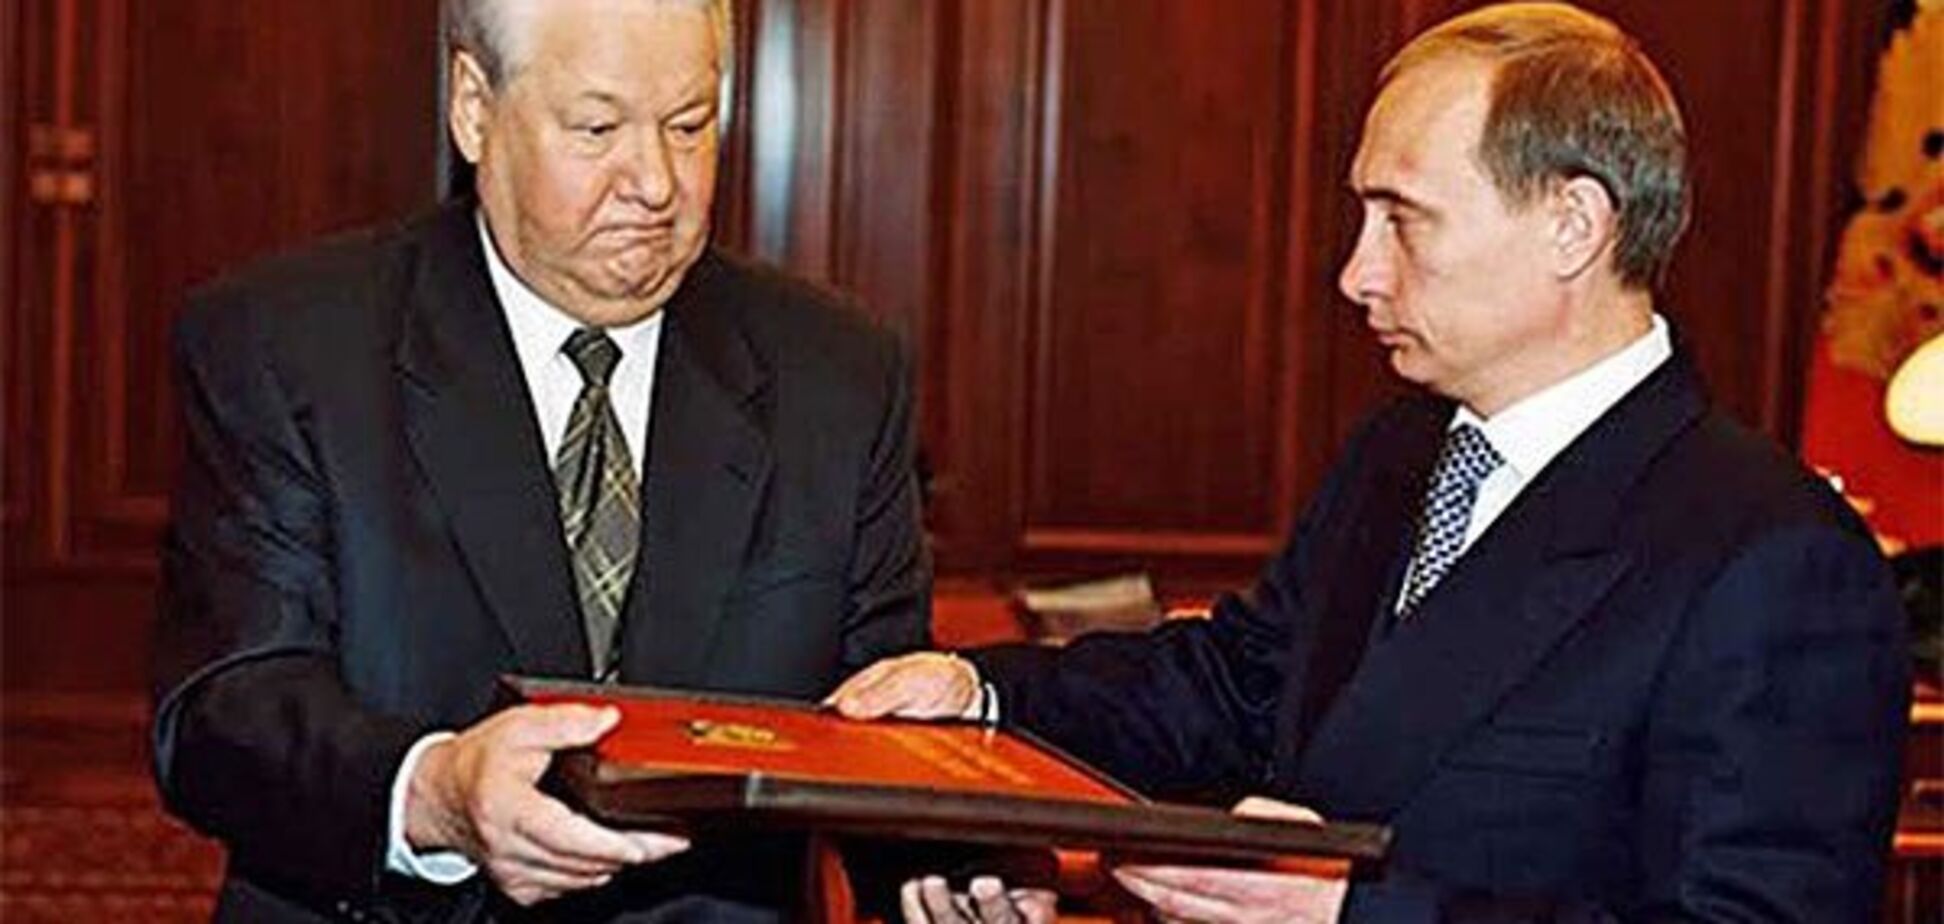 Хто привів Путіна до влади: в Росії згадали 'співучасників'